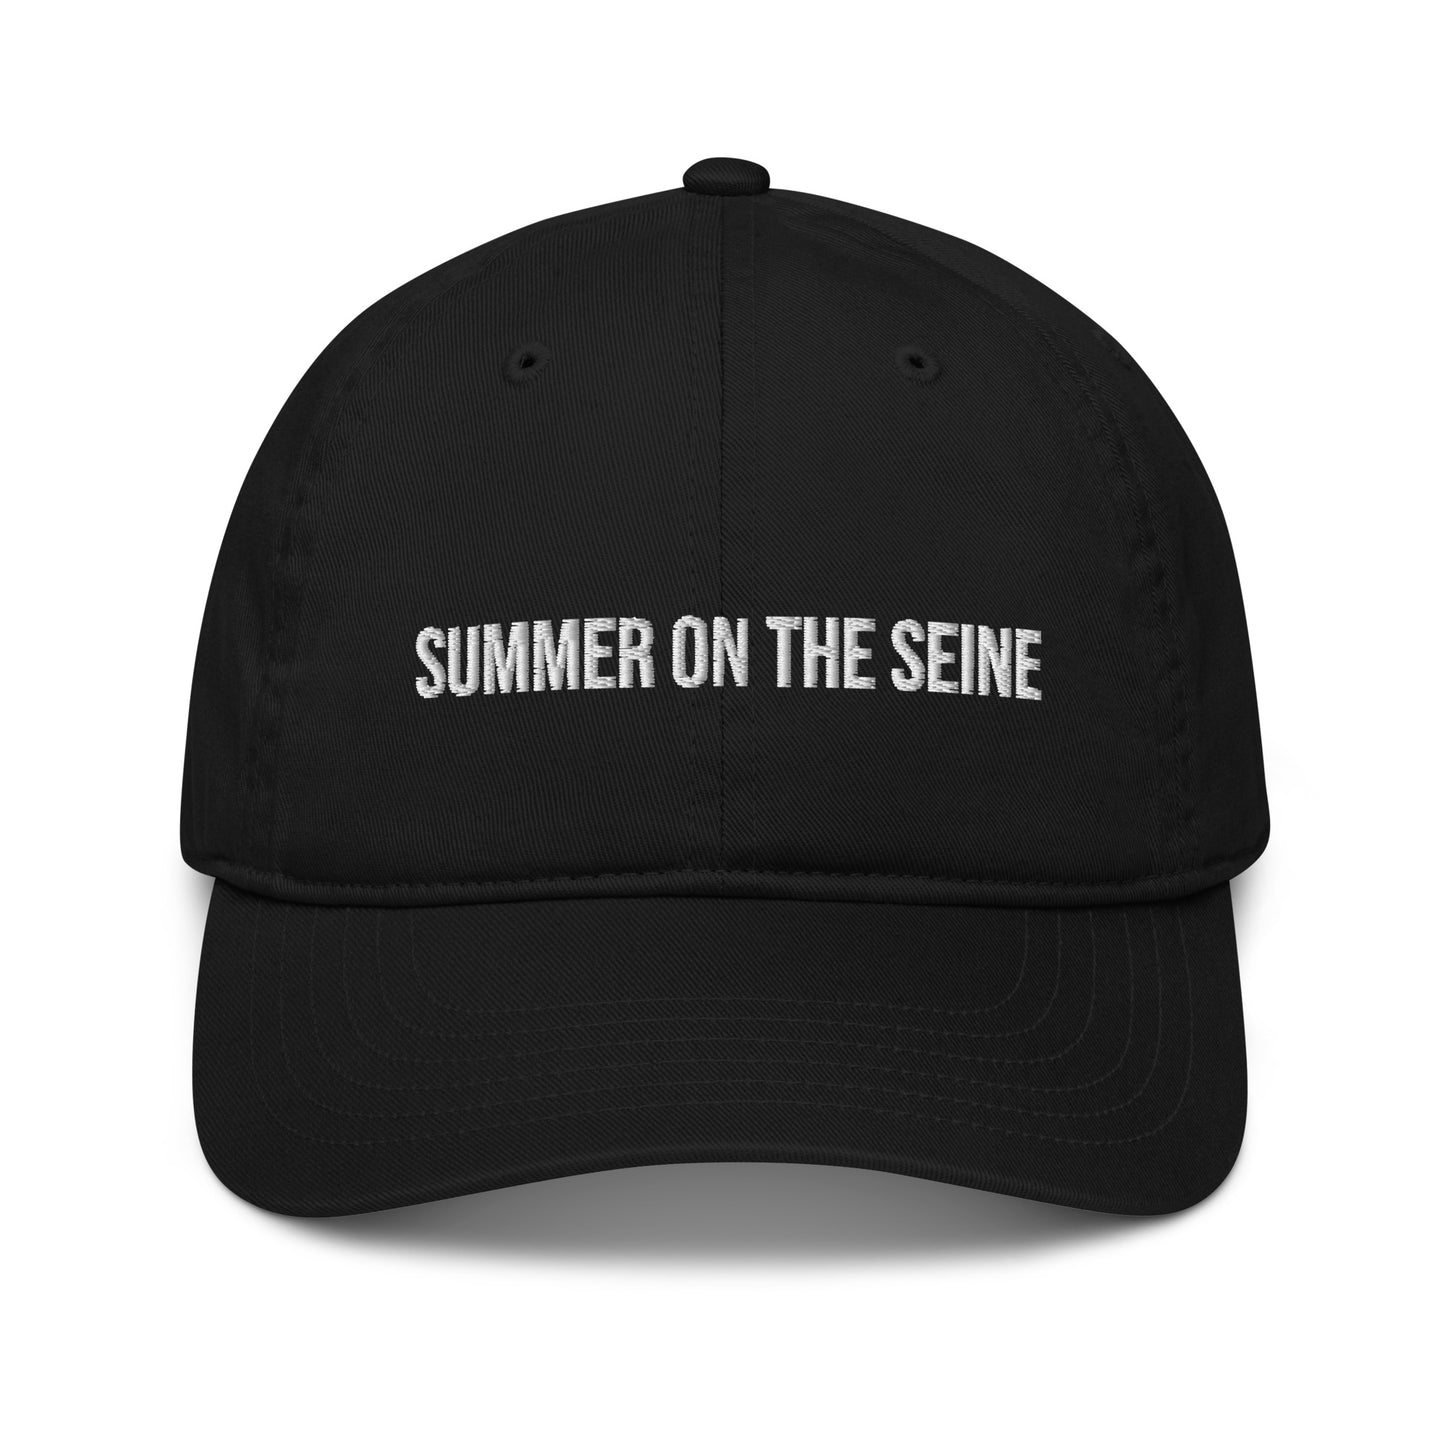 Summer on the Seine Eco Friendly Dad Hat